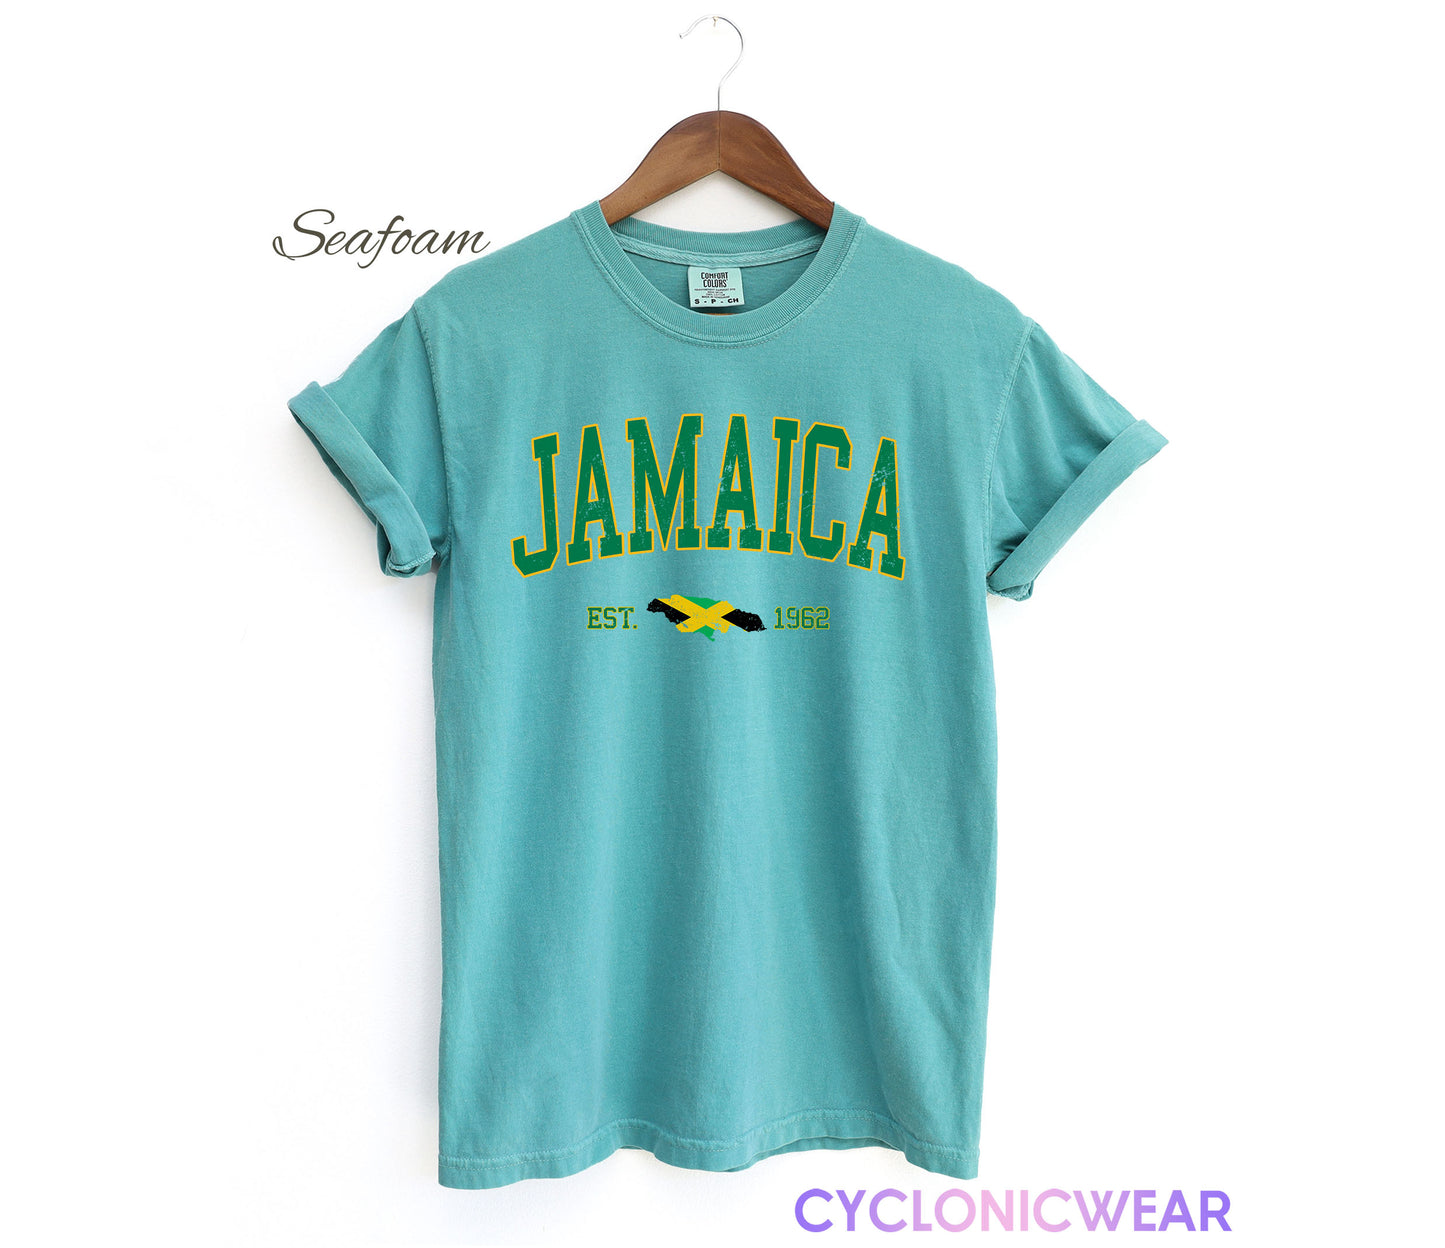 Retro Vintage Jamaica Comfort Colors Shirt